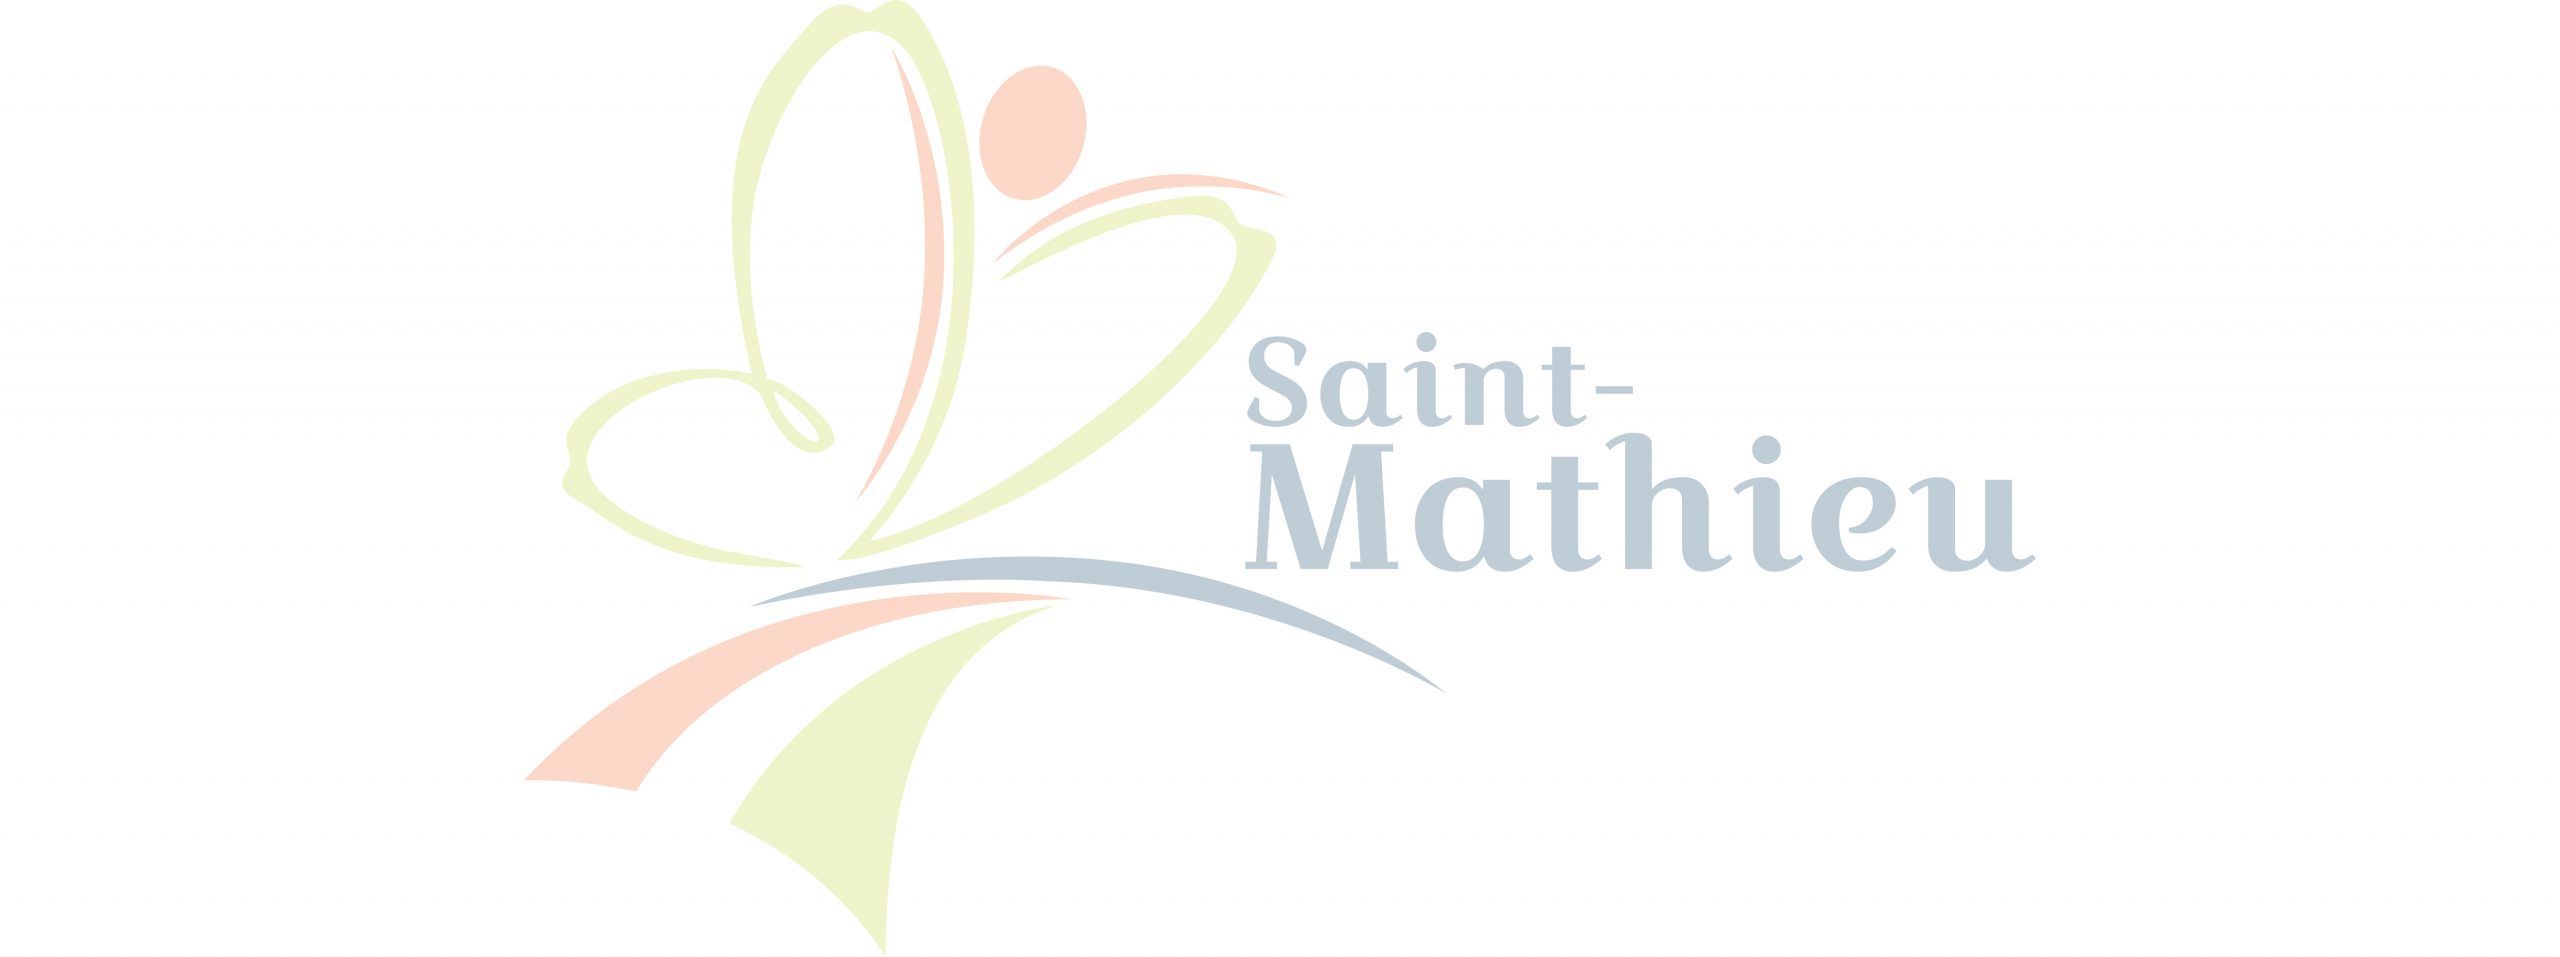 Épisode 2 – Saint-Mathieu, portrait d’une communauté